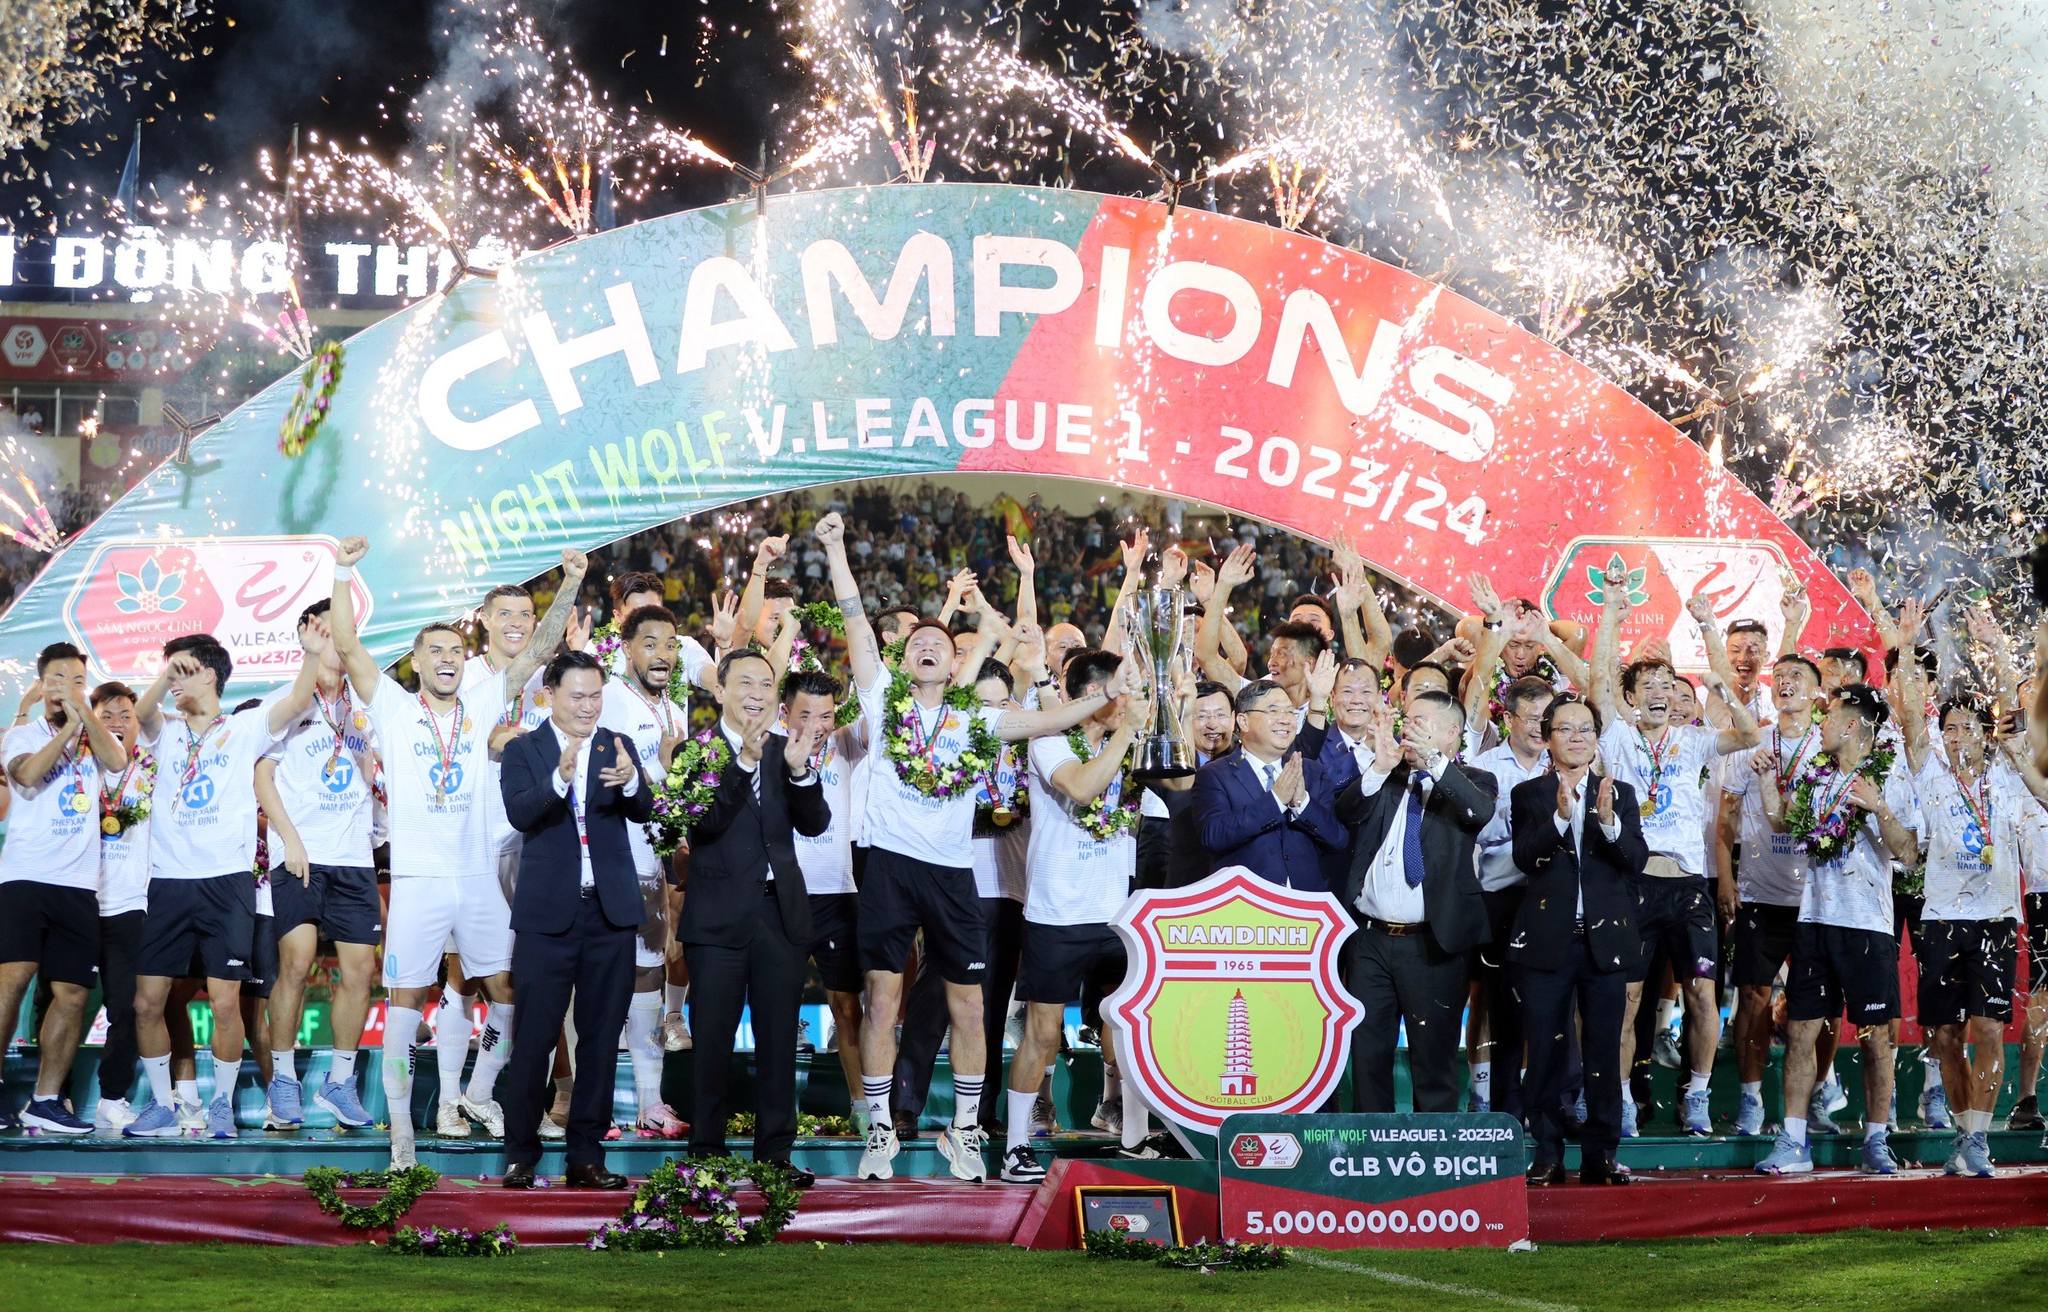 Cúp vô địch của V.League, cúp Quốc gia, hạng Nhất phiên bản mới trình làng - Ảnh: Phan Tùng